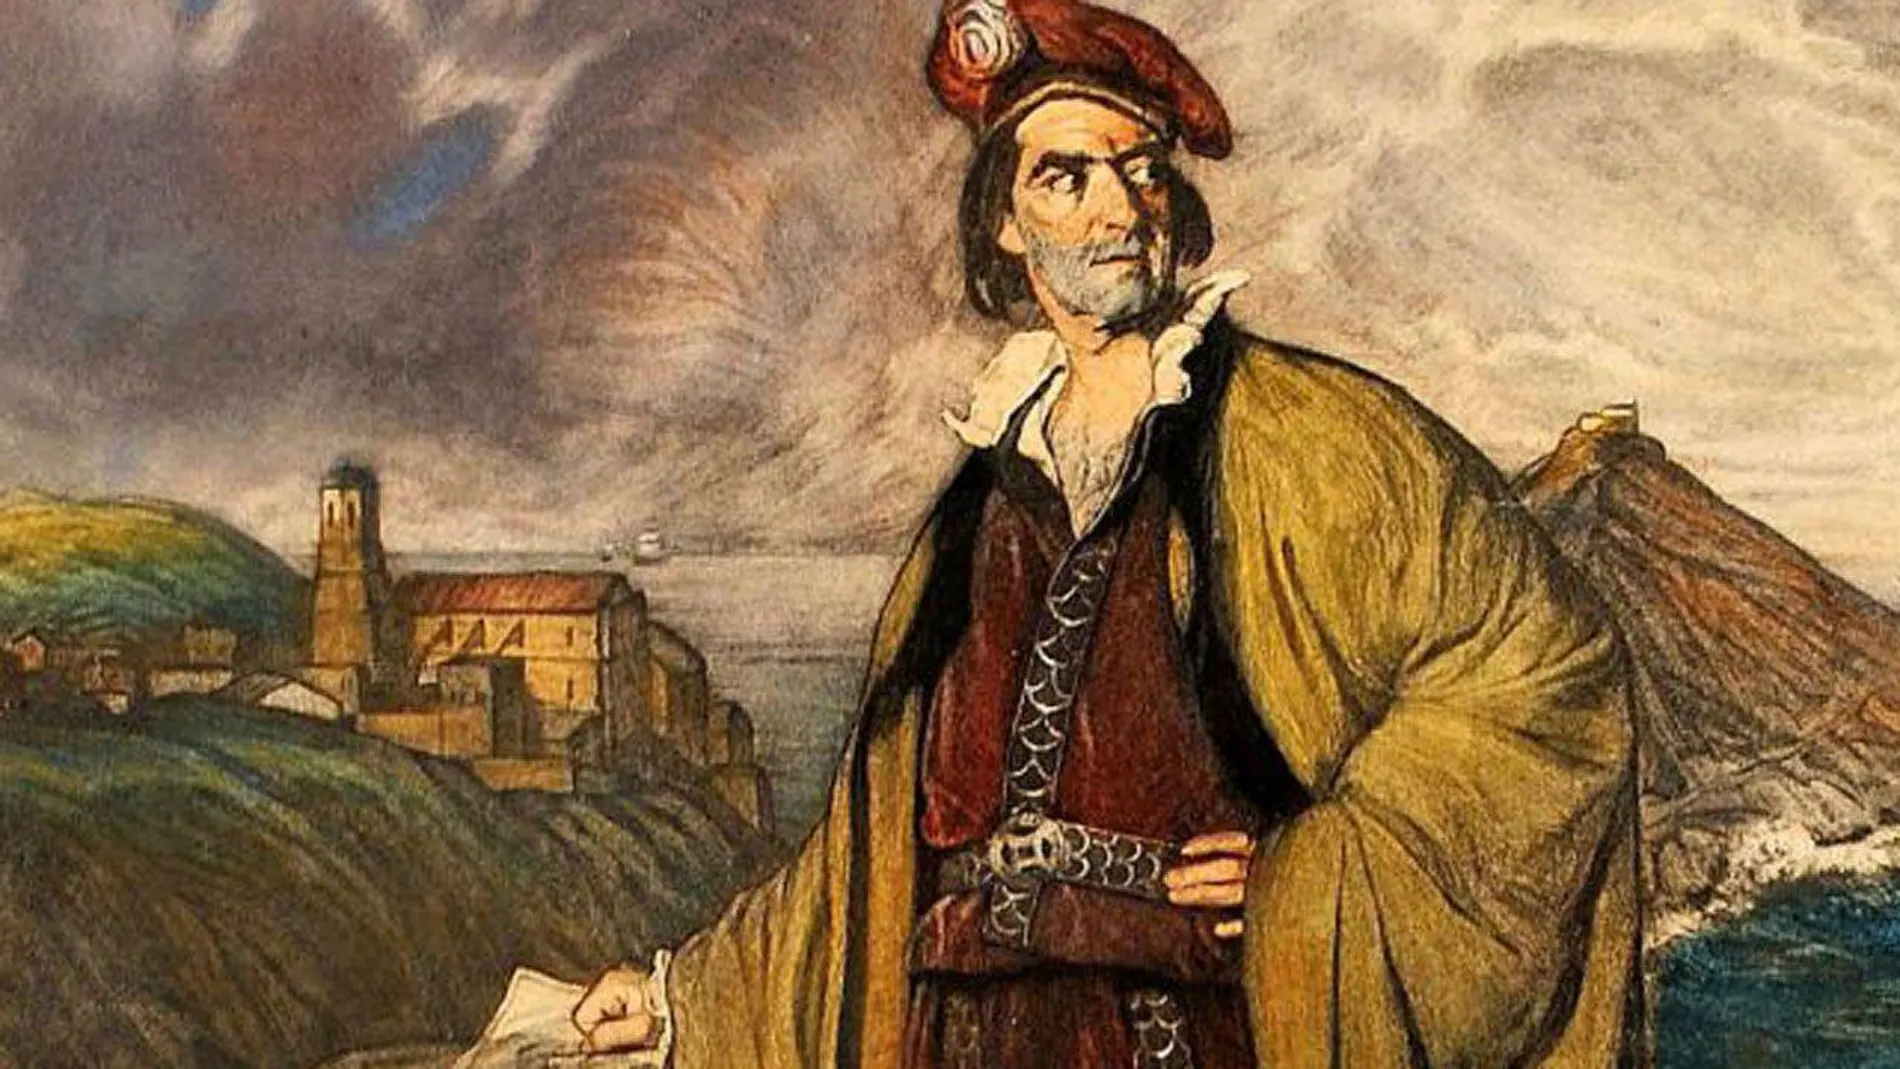 El guipuzcoano Juan Sebastián Elcano pintado por Zuloaga